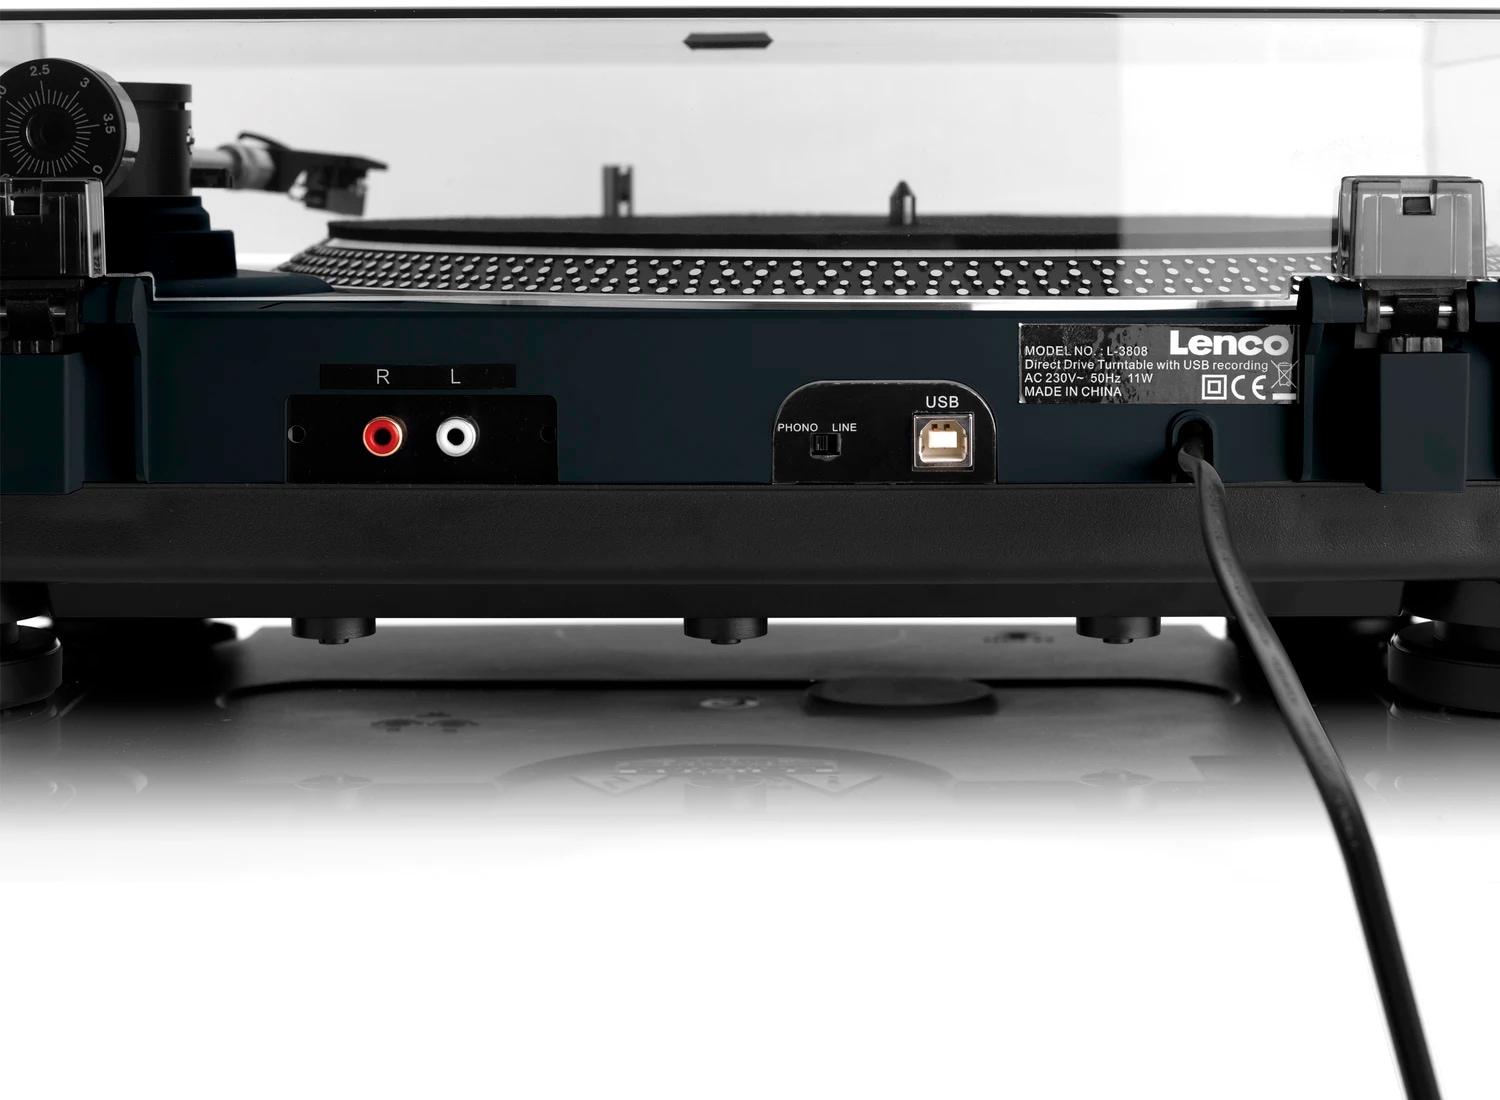 Lenco Plattenspieler »L-3808«, mit Direktantrieb jetzt bei OTTO